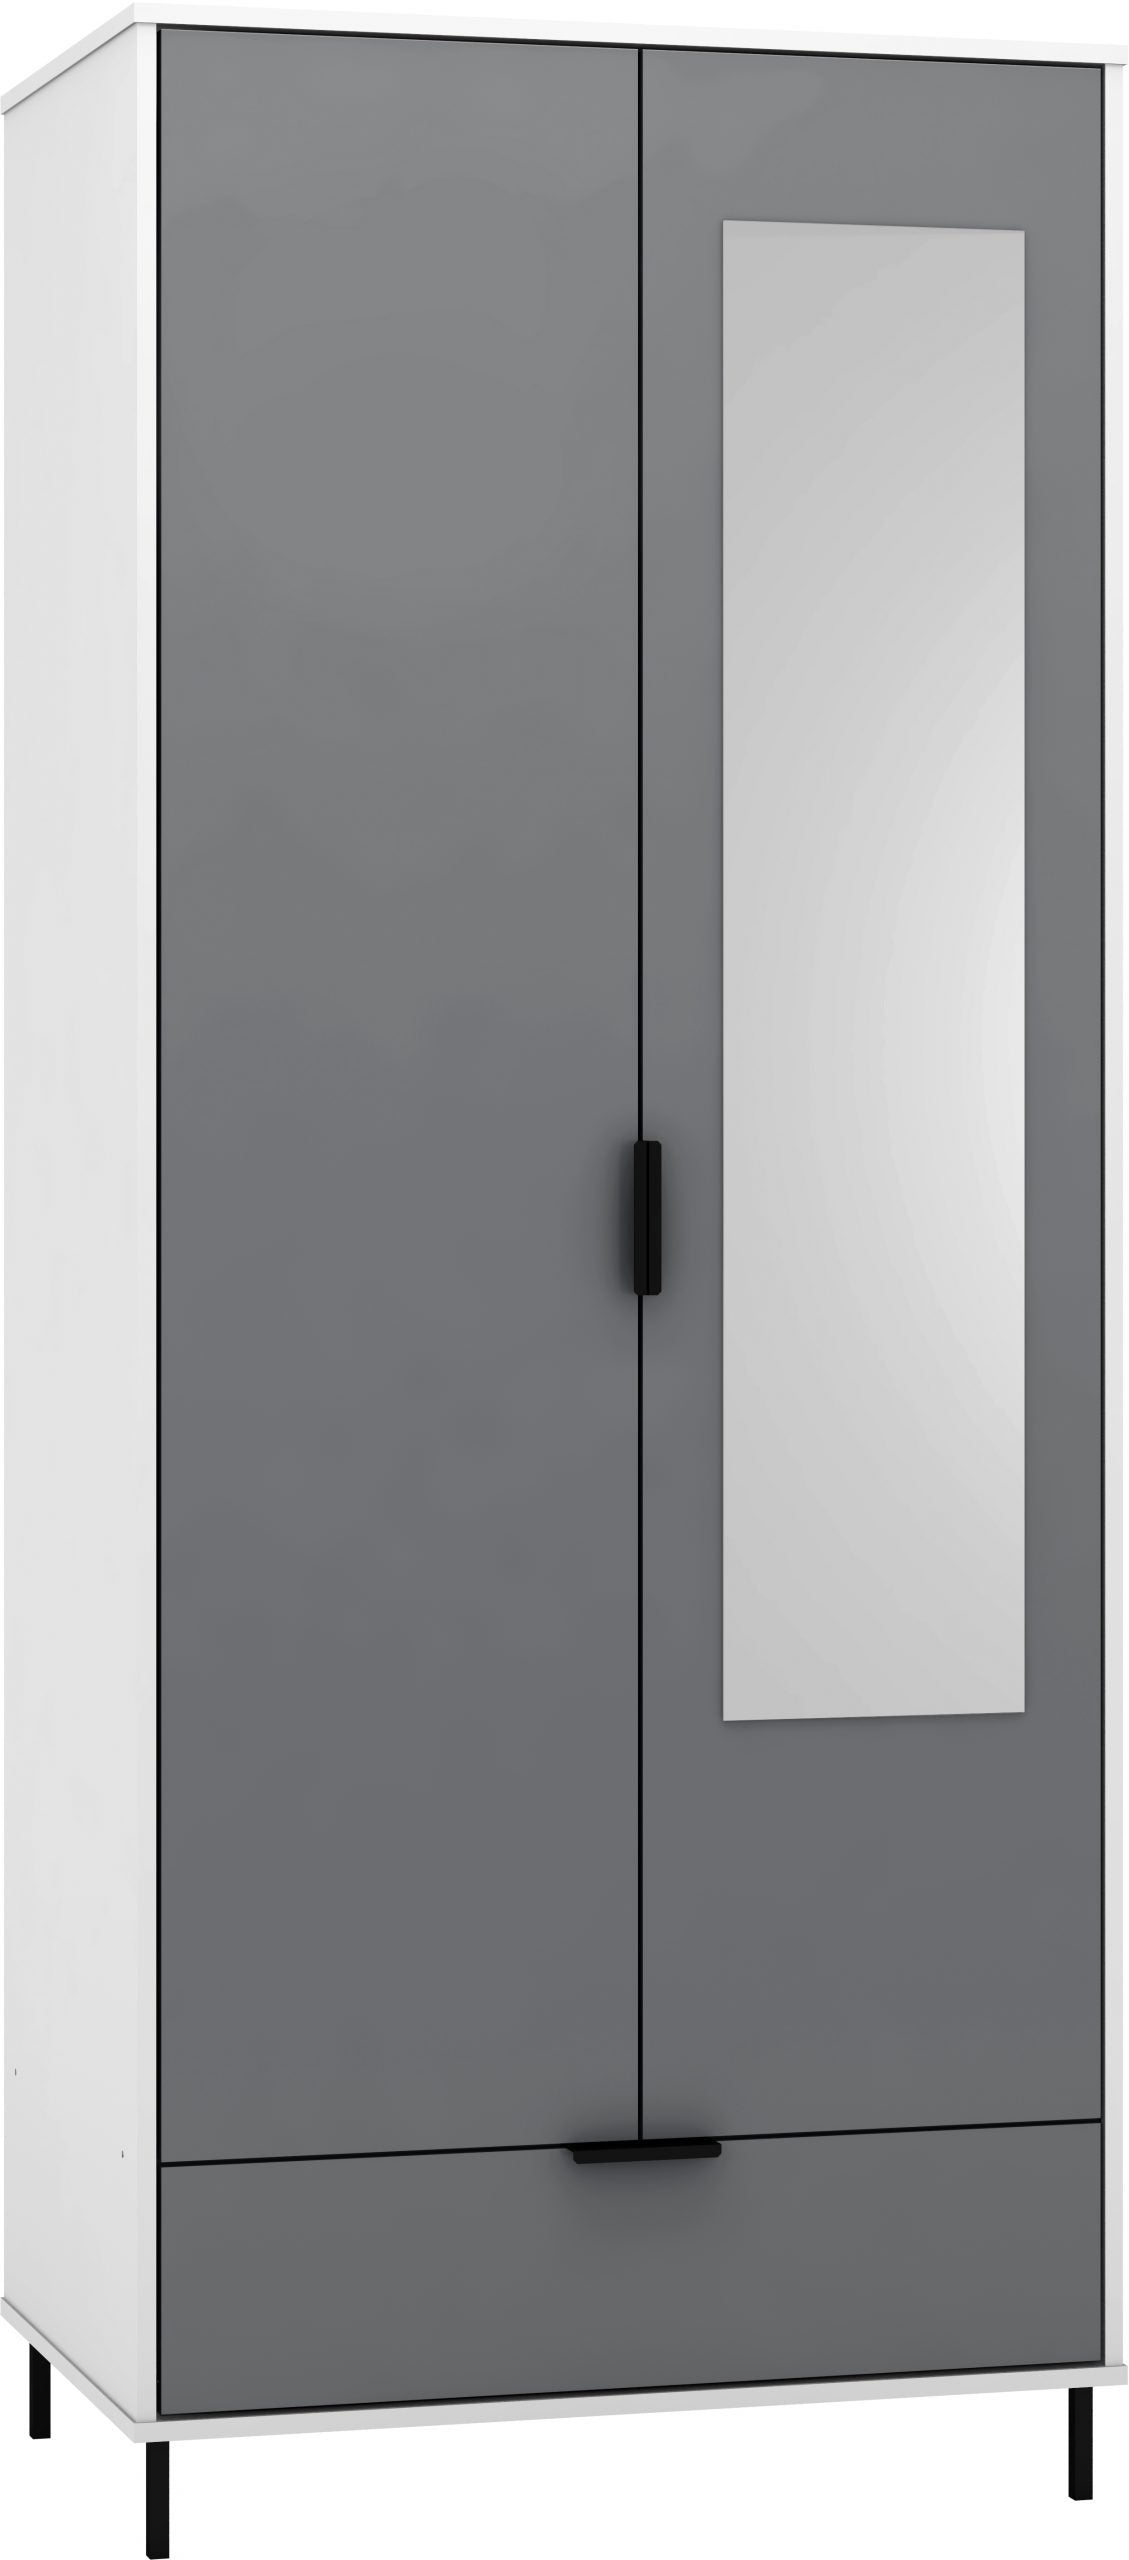 2 Door 1 Drawer Mirrored Wardrobe Grey/White Gloss